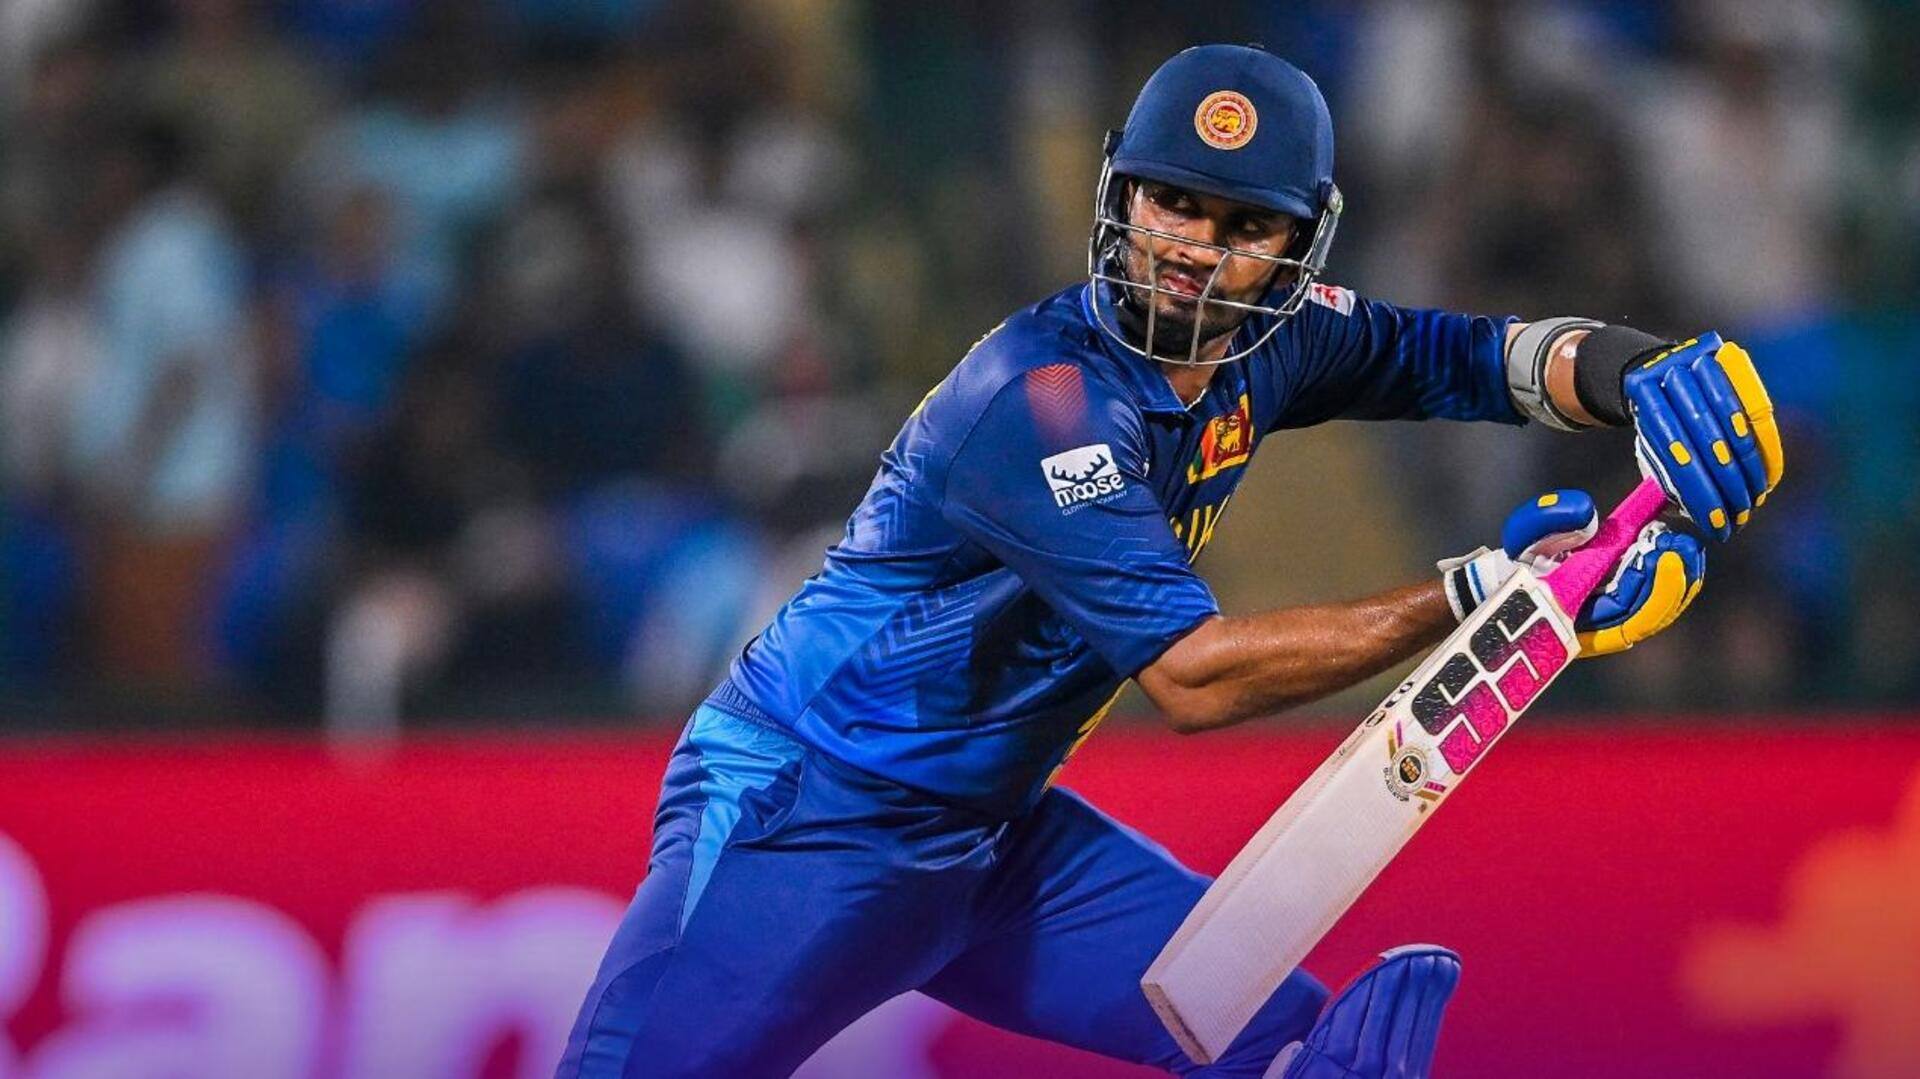 दक्षिण अफ्रीका बनाम श्रीलंका: दासुन शनाका ने जड़ा वनडे करियर का चौथा अर्धशतक, जानिए आंकड़े